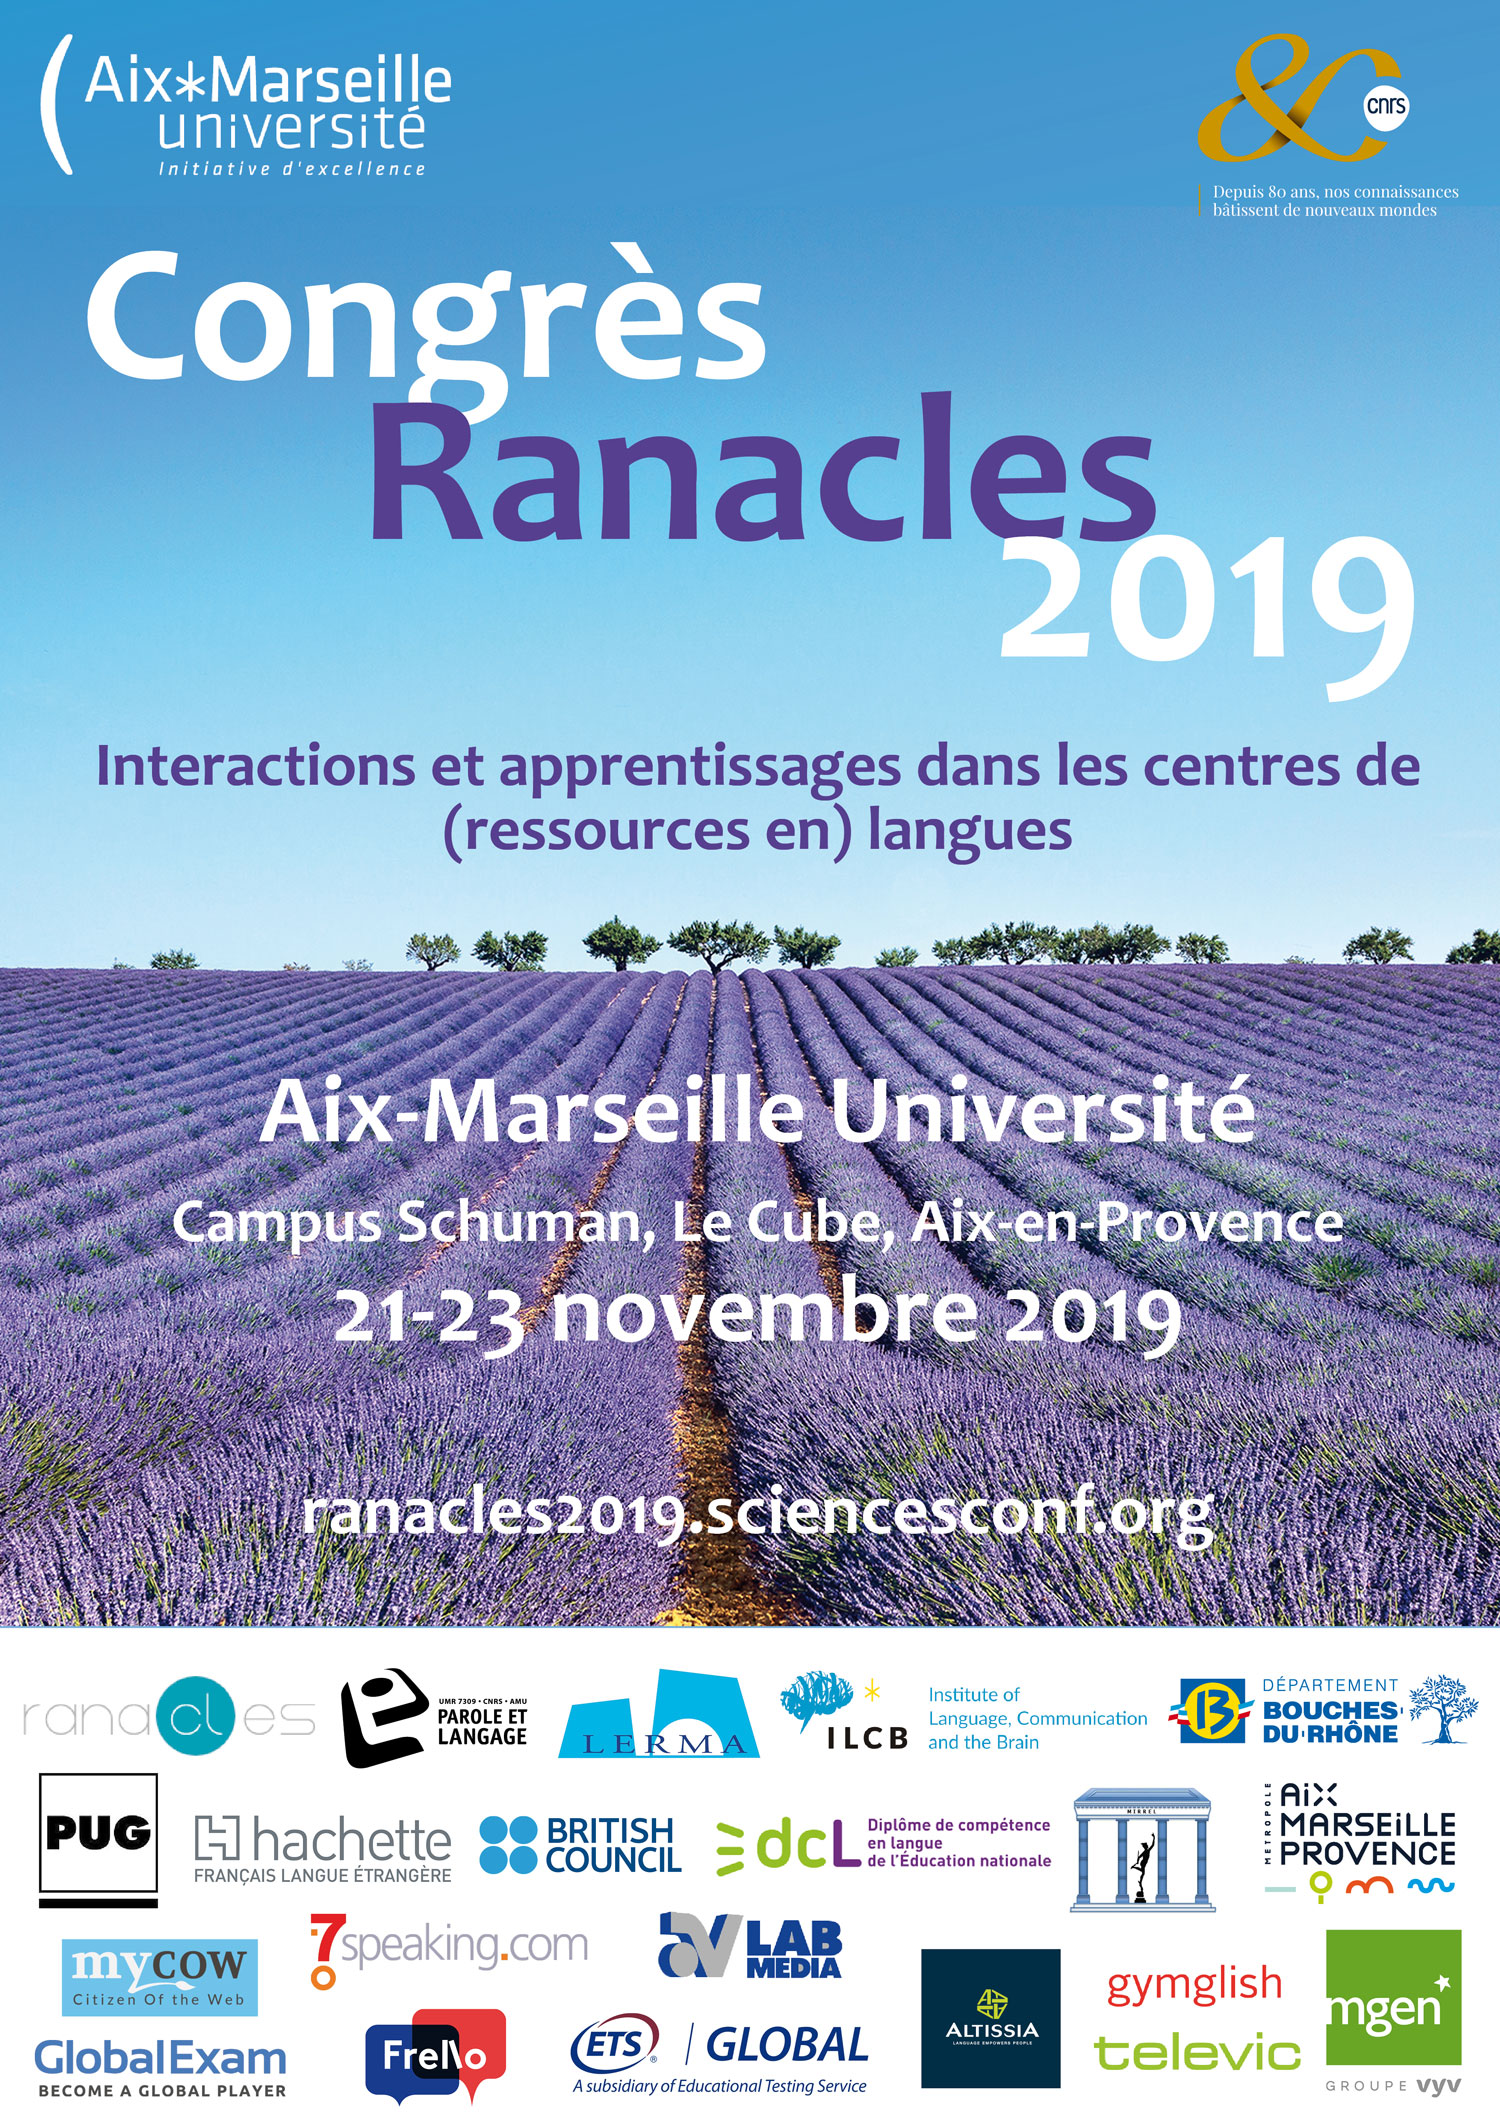 Aix accueille le 27e Congrès RANACLES du 21 au 23 novembre 2019